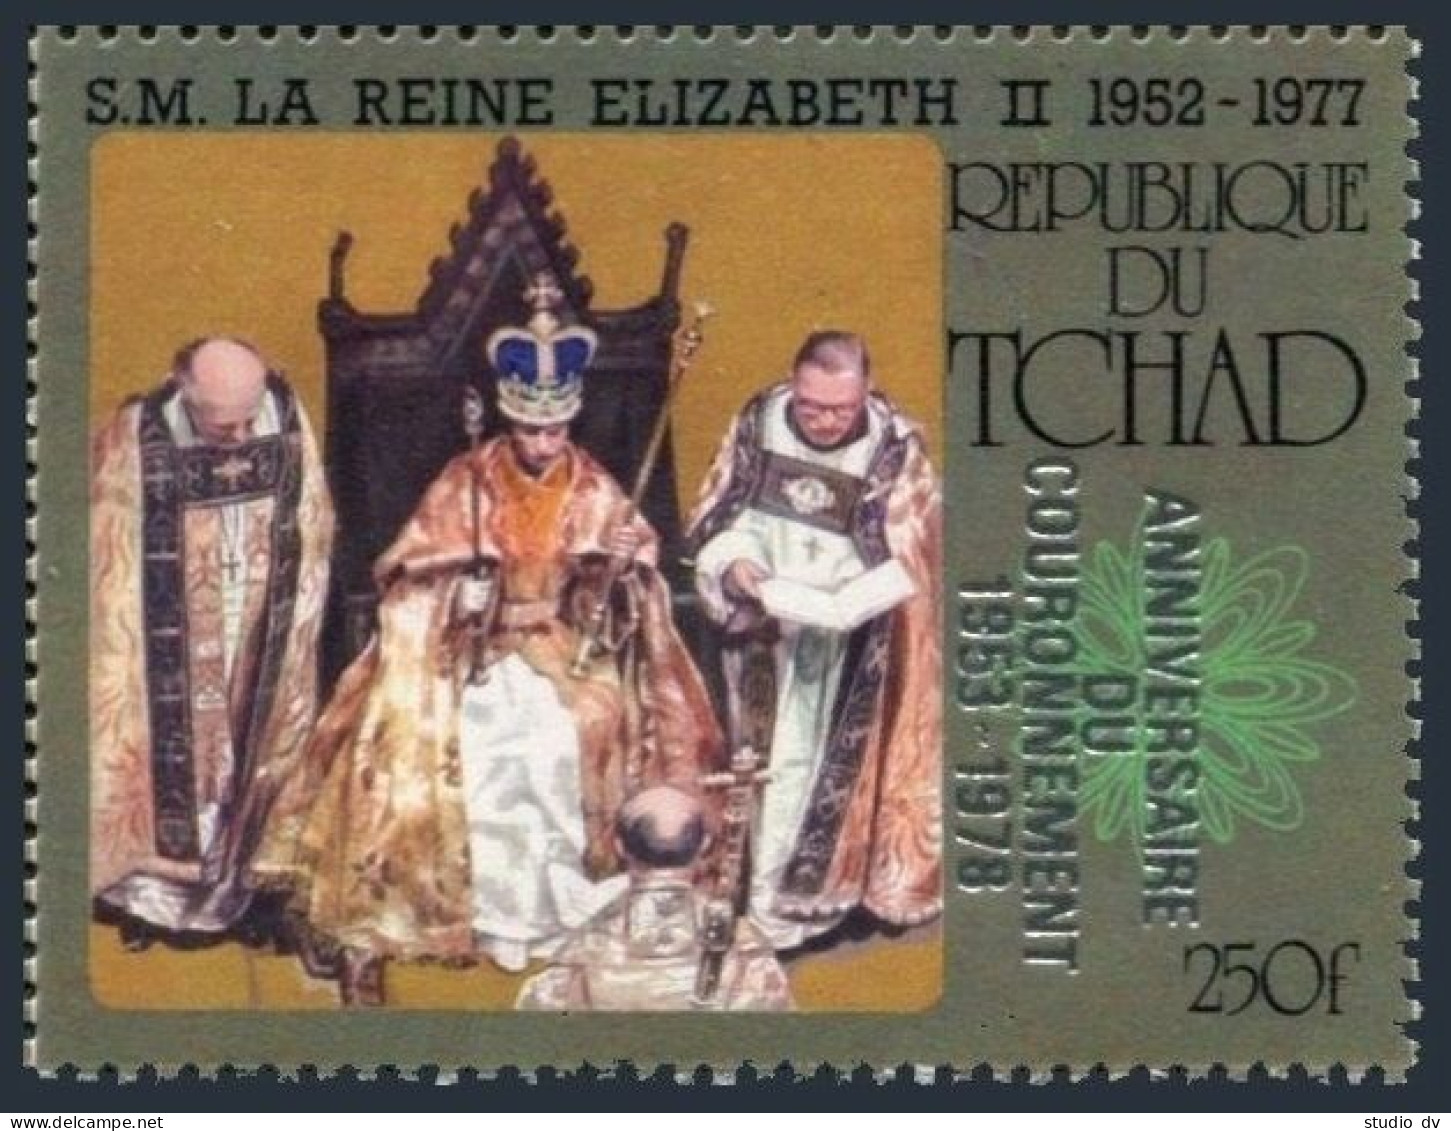 Chad 347, MNH. Michel 821. Coronation Of Queen Elizabeth II, 25th Ann. 1978. - Chad (1960-...)